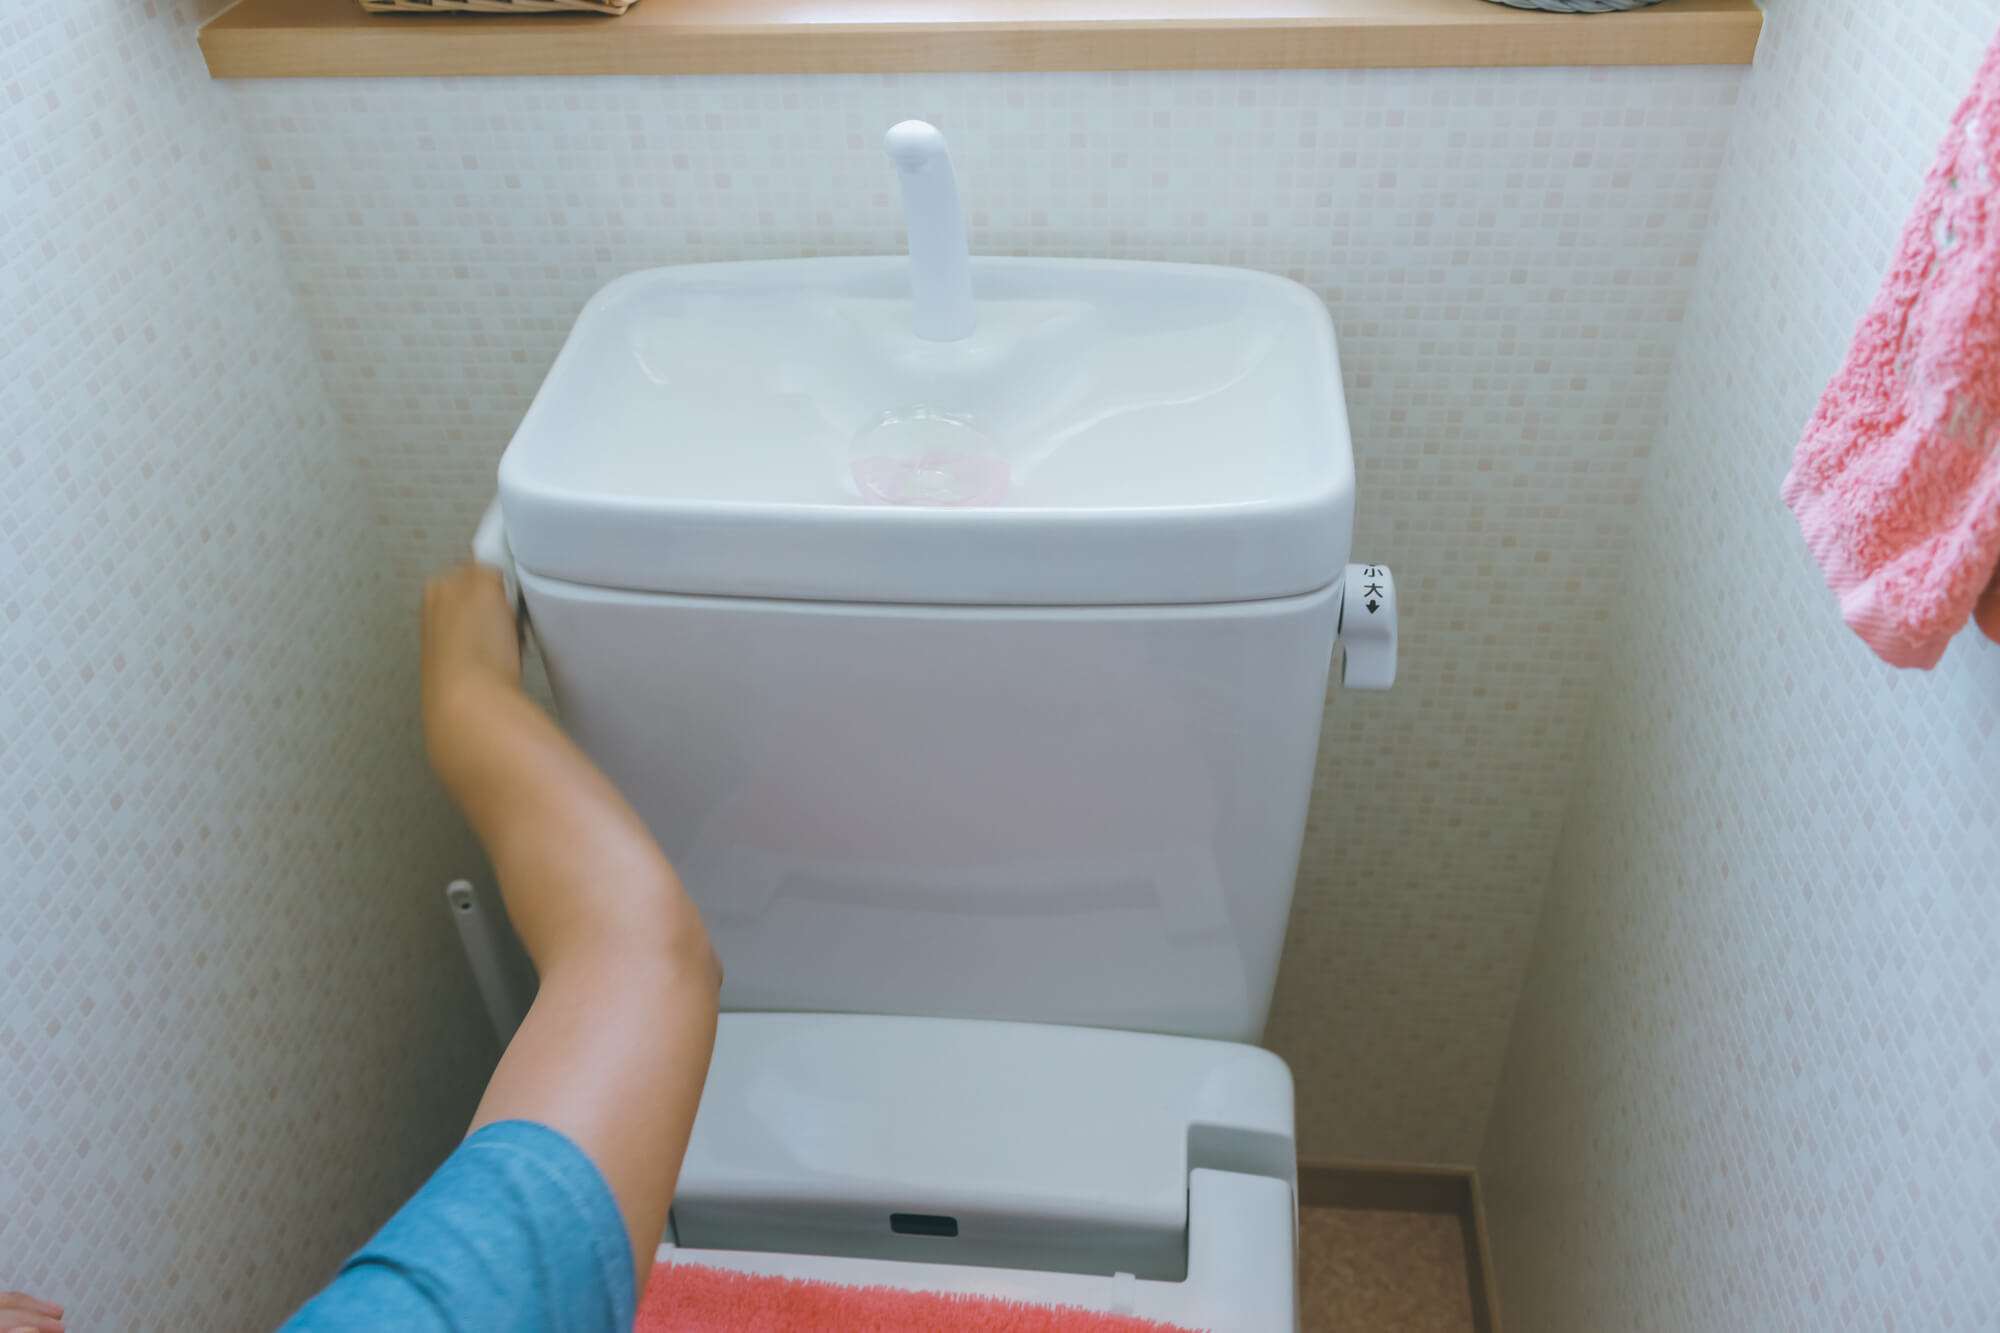 トイレタンクを自分で交換する8つの手順をご紹介